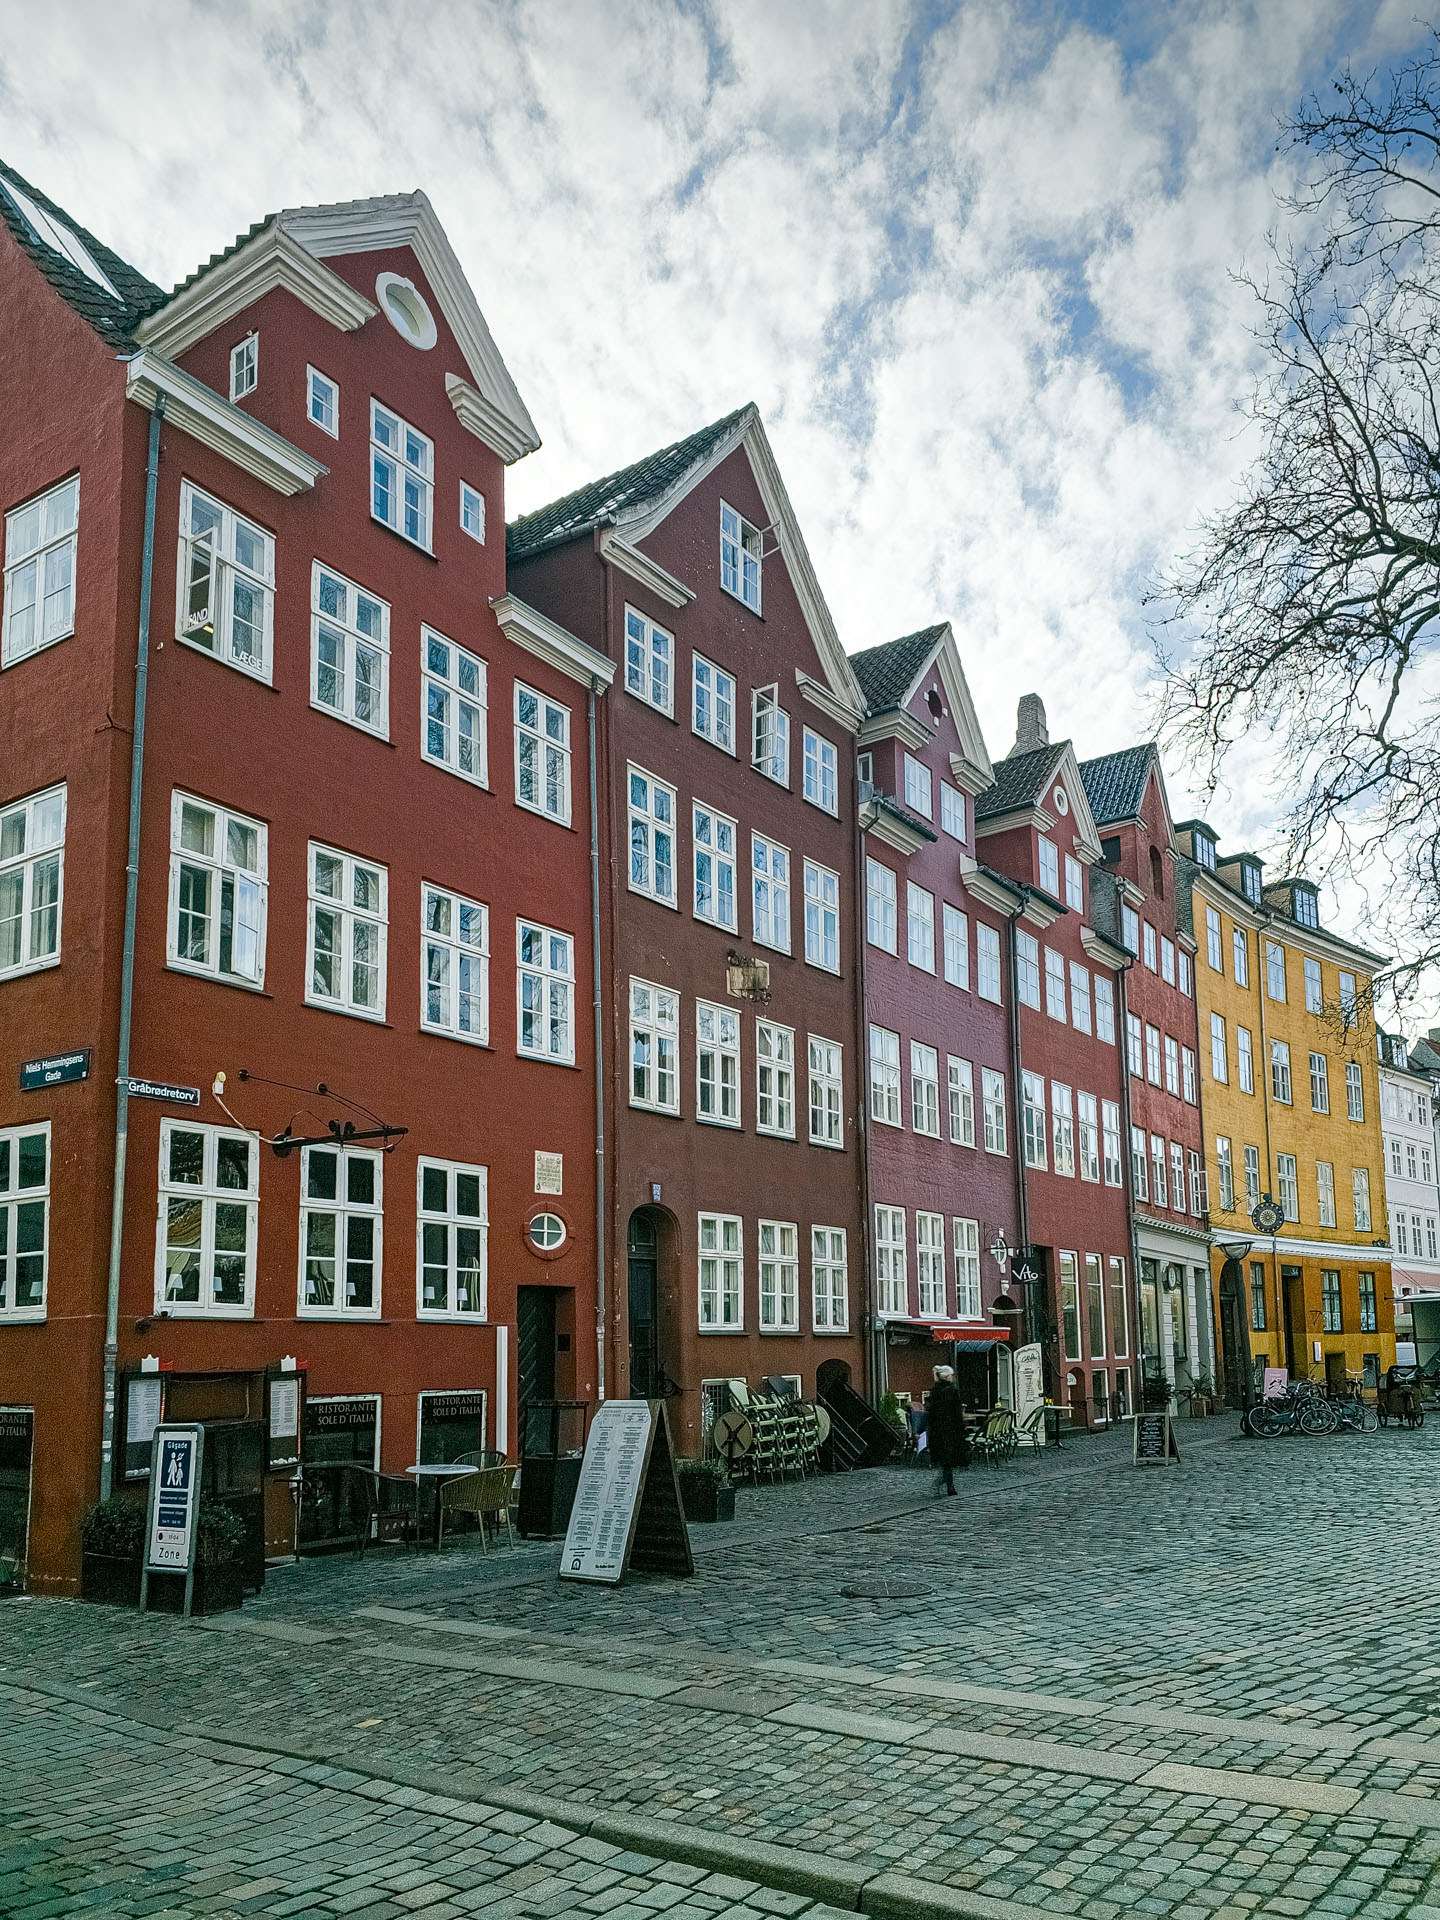 Ancient buildings on Strøget in Copenhagen